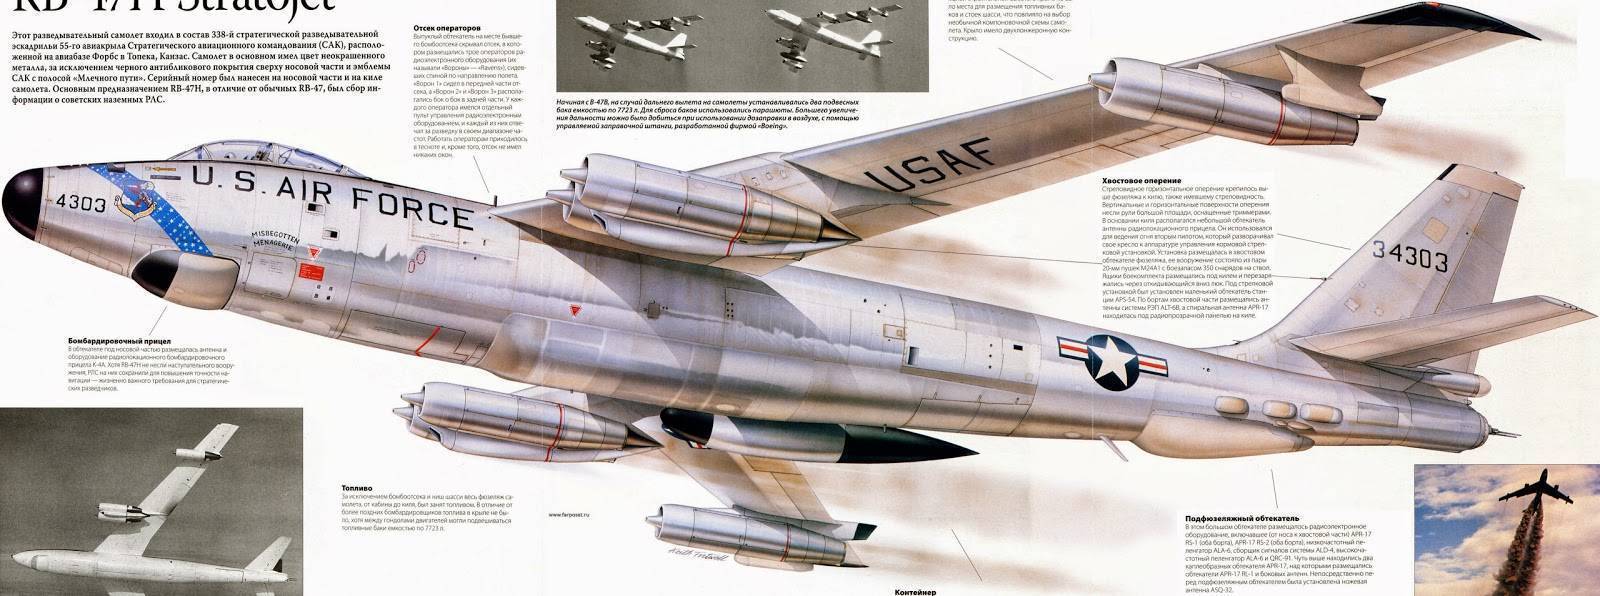 Boeing b-47 stratojet — википедия с видео // wiki 2